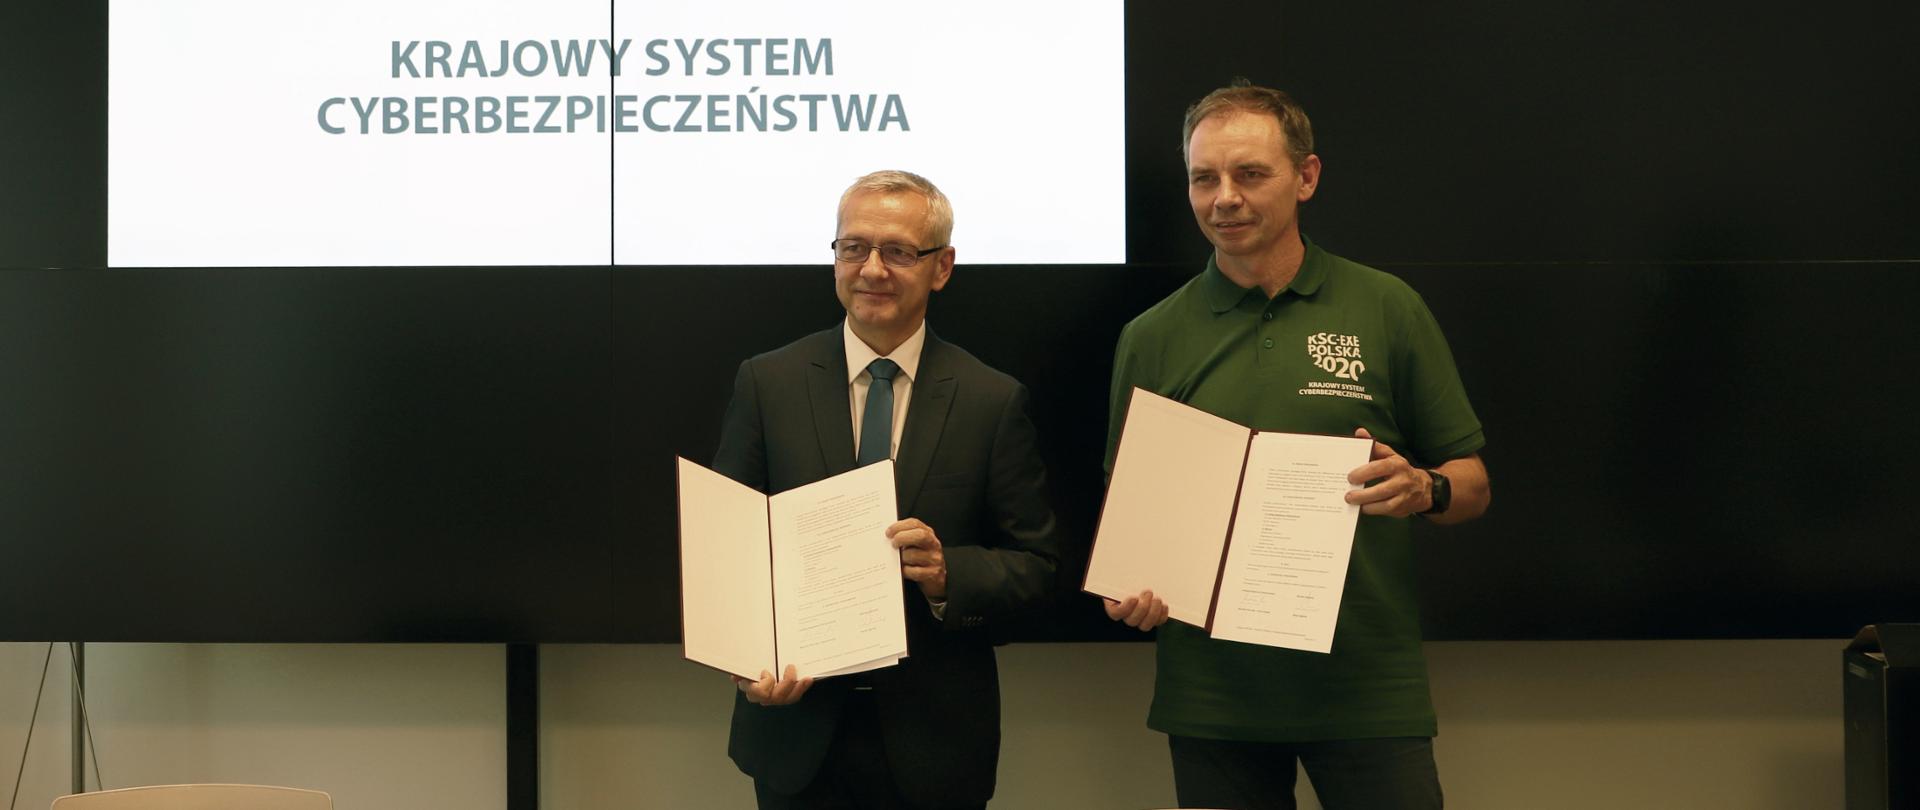 Minister cyfryzacji Marek Zagórski i Mirosław Maj, prezes Fundacji Bezpieczna Cyberprzestrzeń pozują do zdjęcia z teczkami, w których jest podpisane przez obie strony porozumienie.